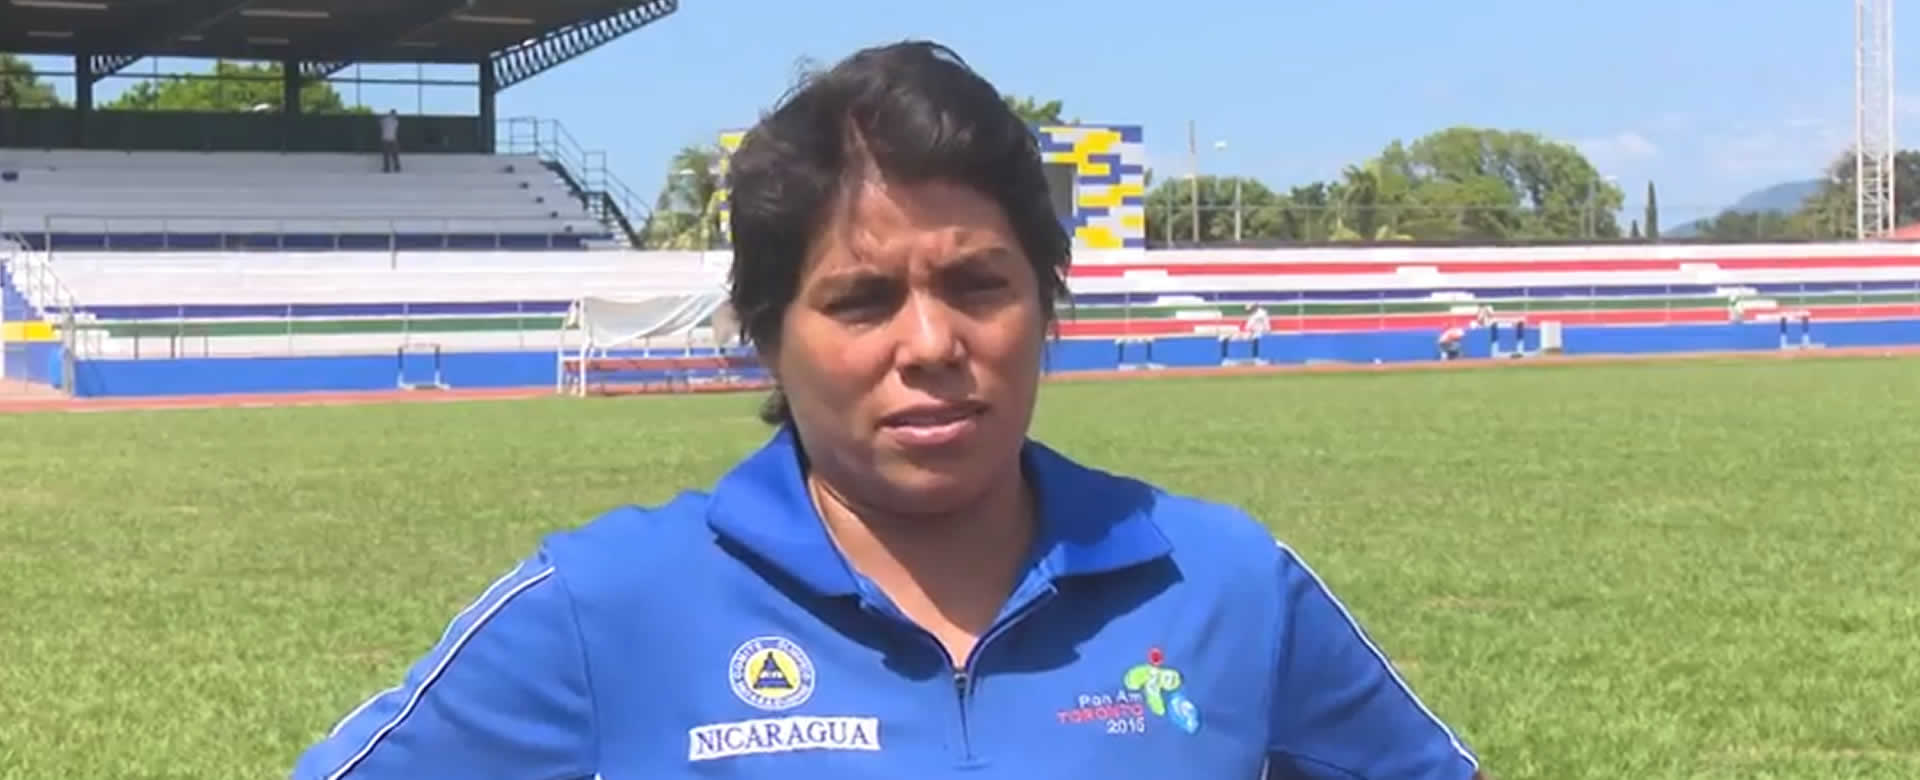 Dalila Rugama portará la bandera de Nicaragua en los XI Juegos Deportivos Centroamericanos